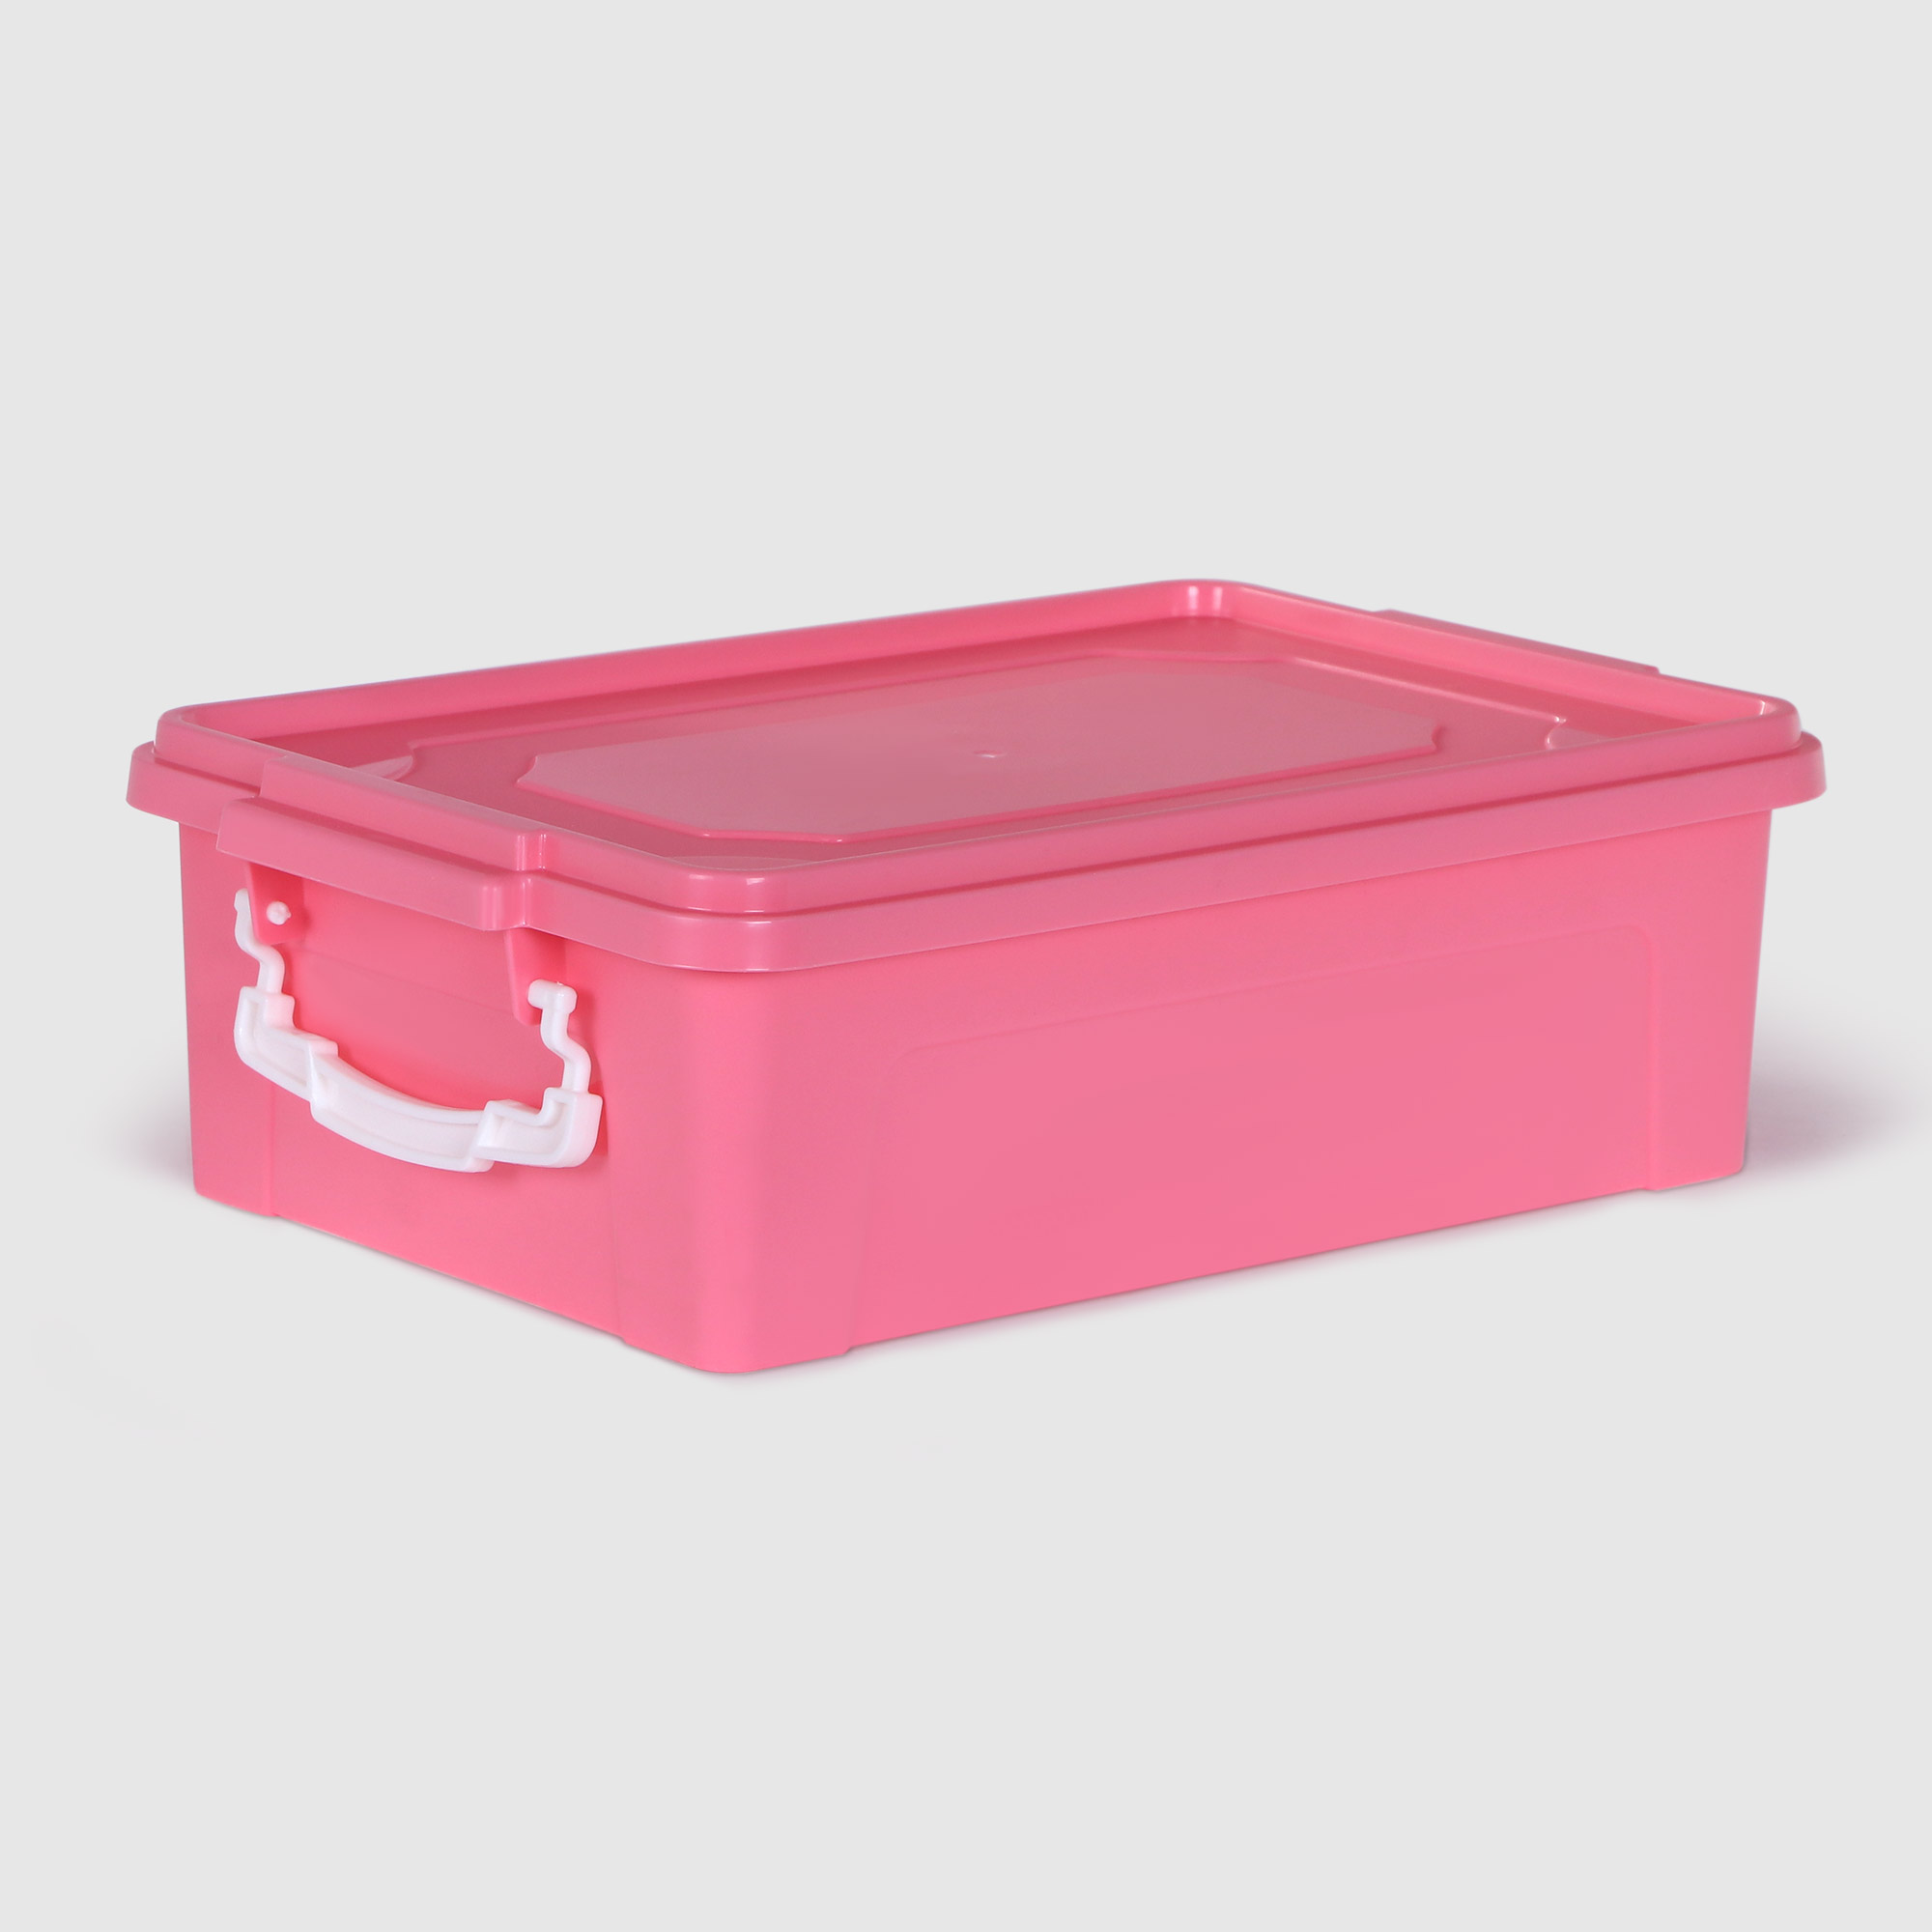 Контейнер Stars Plast для хранения 6 л контейнер для хранения детского питания 330 мл розовый